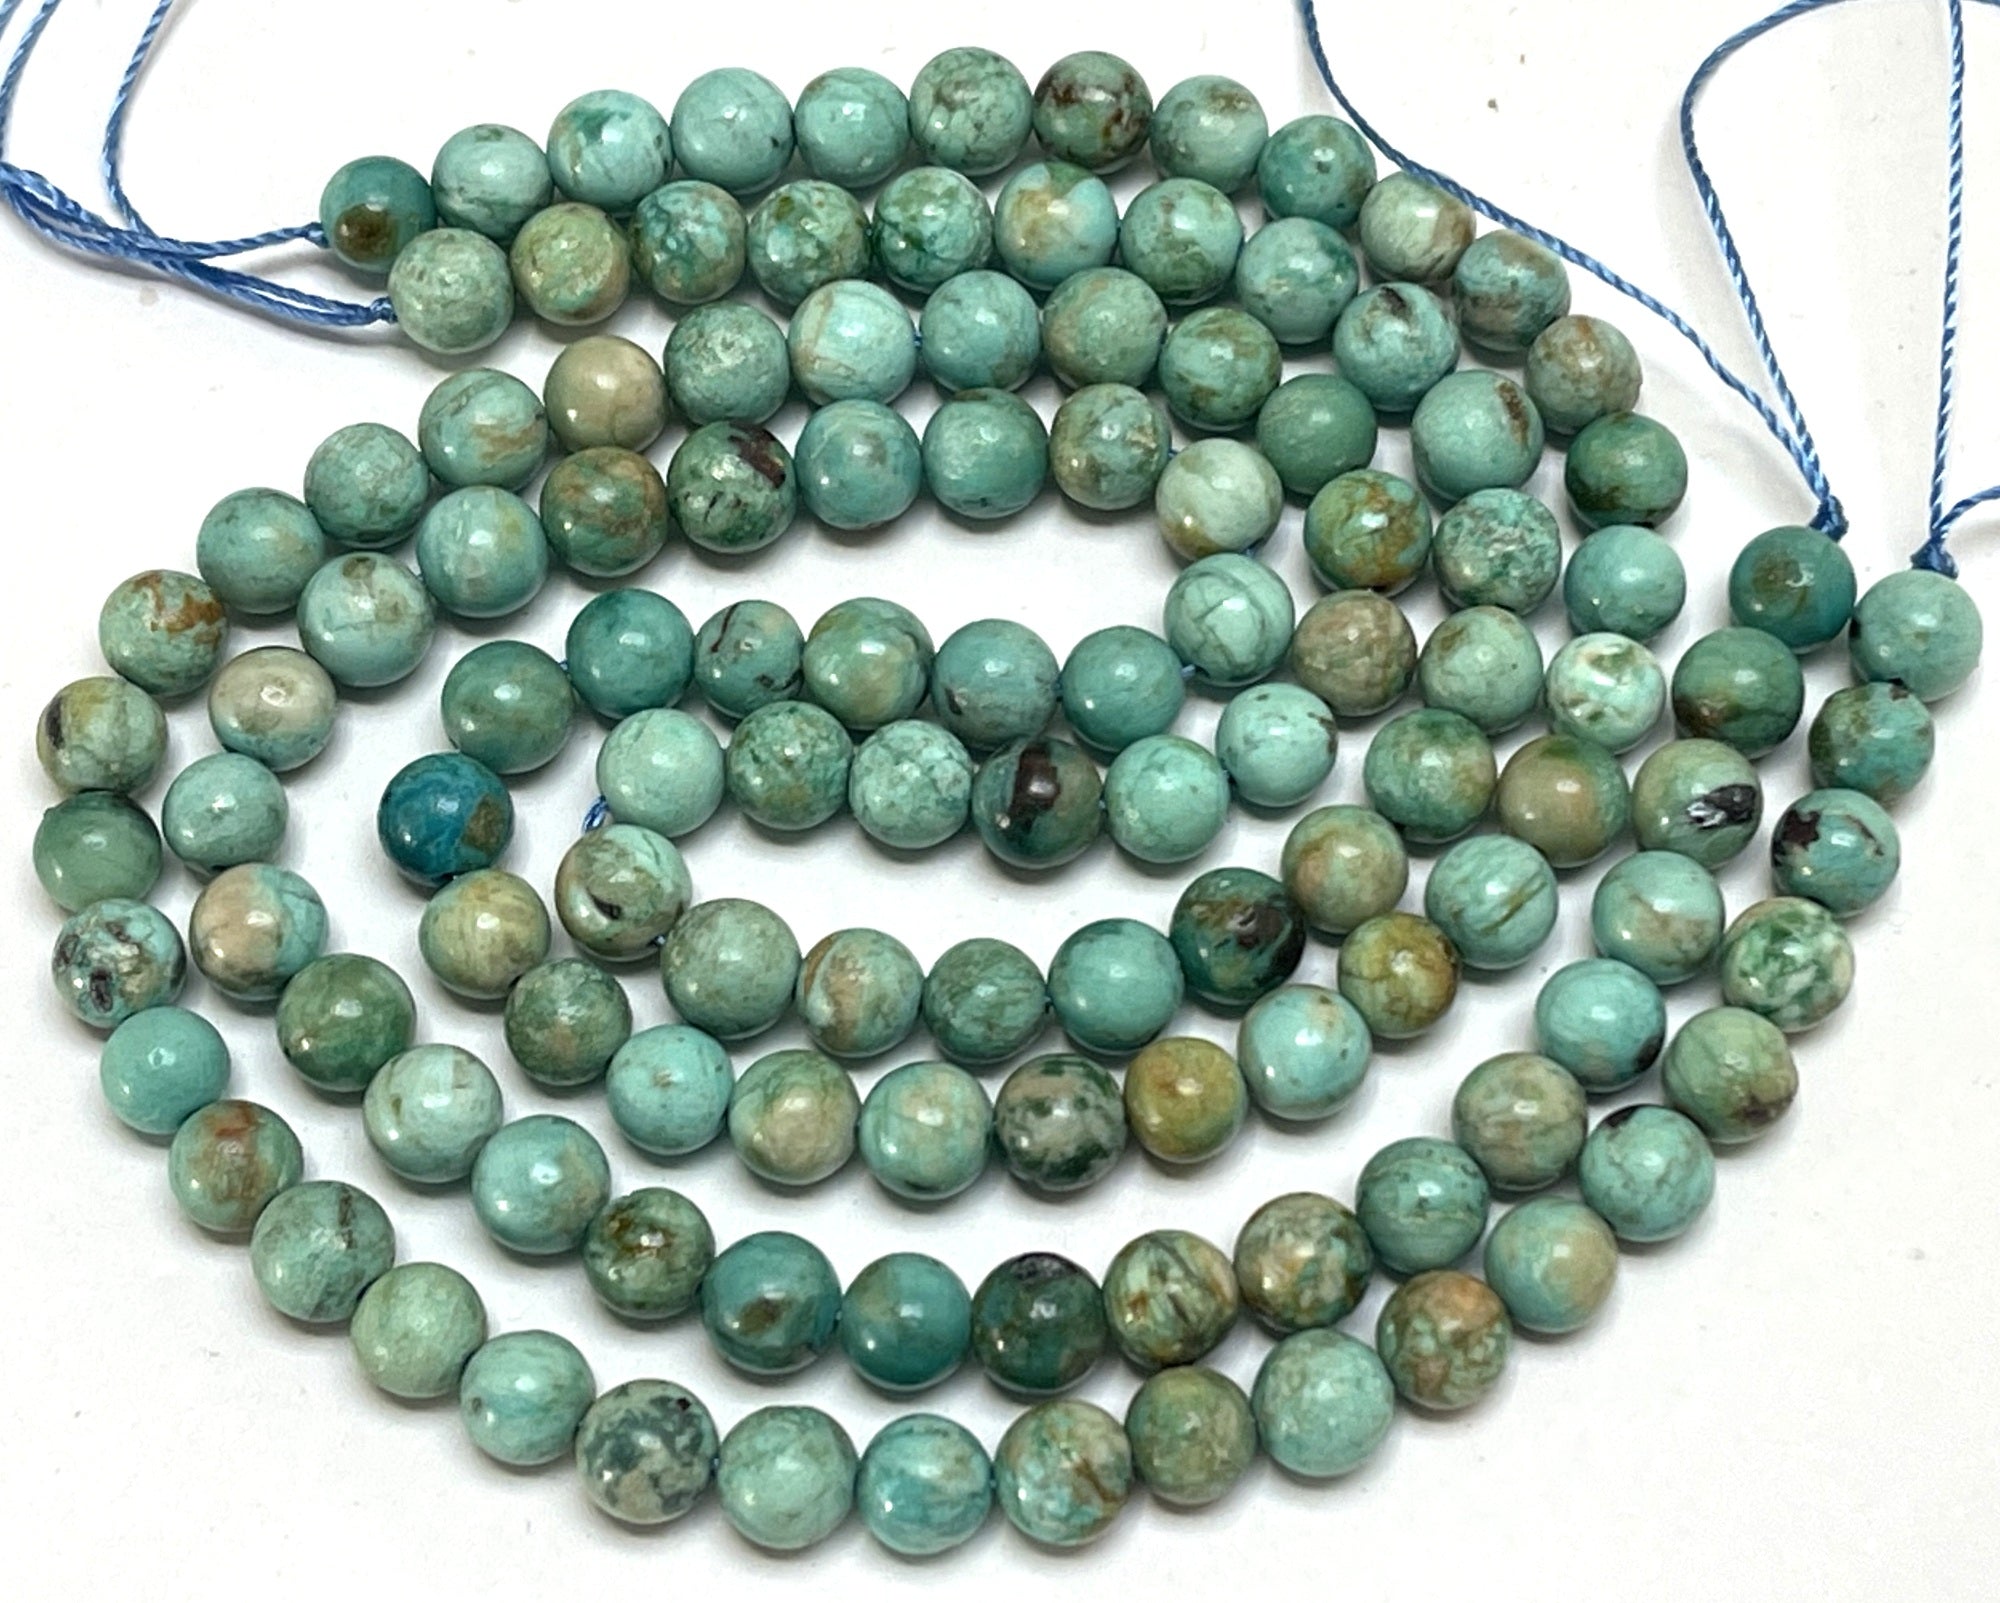 Peruvian Turquoise 6mm round natural gemstone beads 15.5" strand